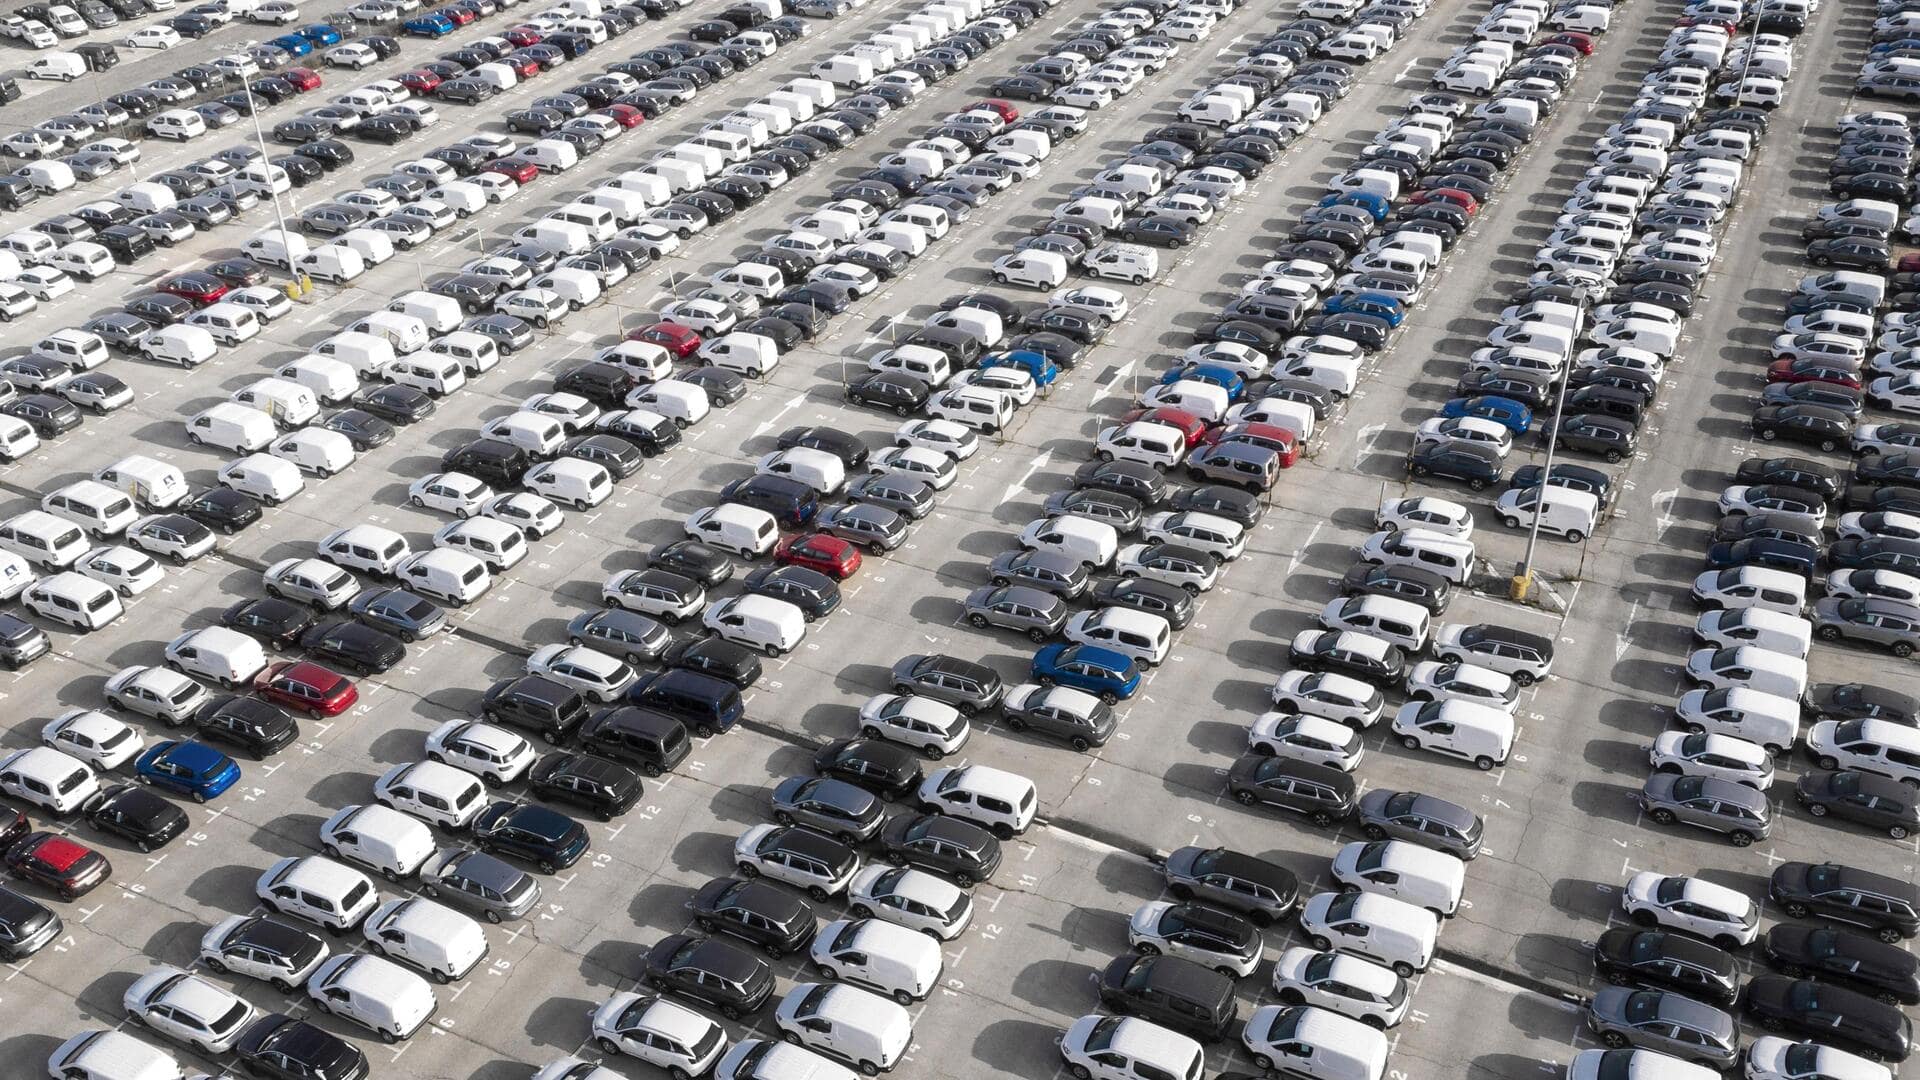 दुनियाभर में अगले साल लगभग 9 करोड़ कारों की बिक्री का अनुमान, चीन होगा सबसे आगे